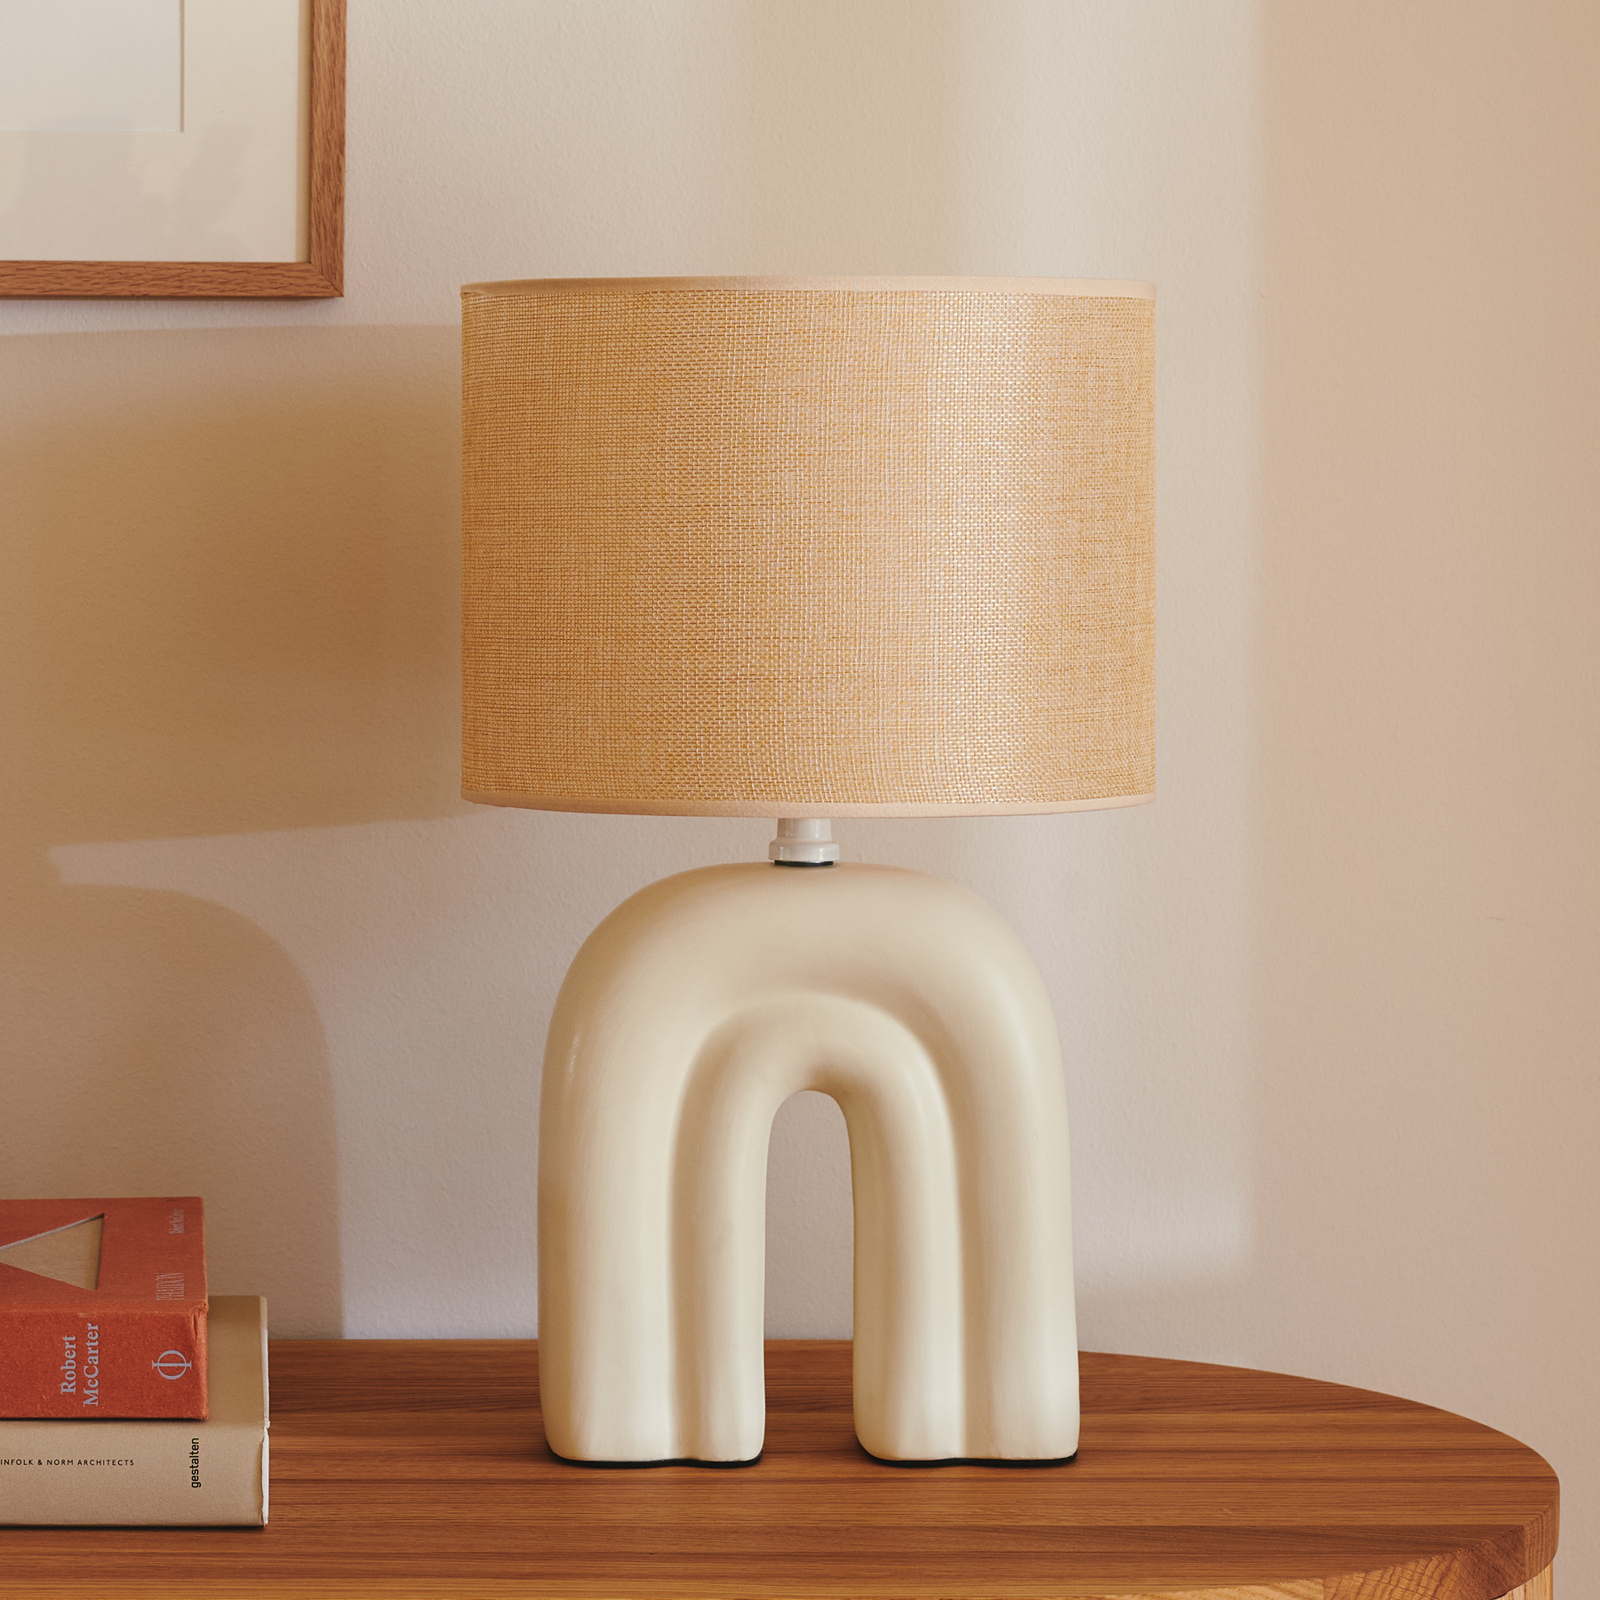 Haze table lamp, ceramic, textile lampshade, beige